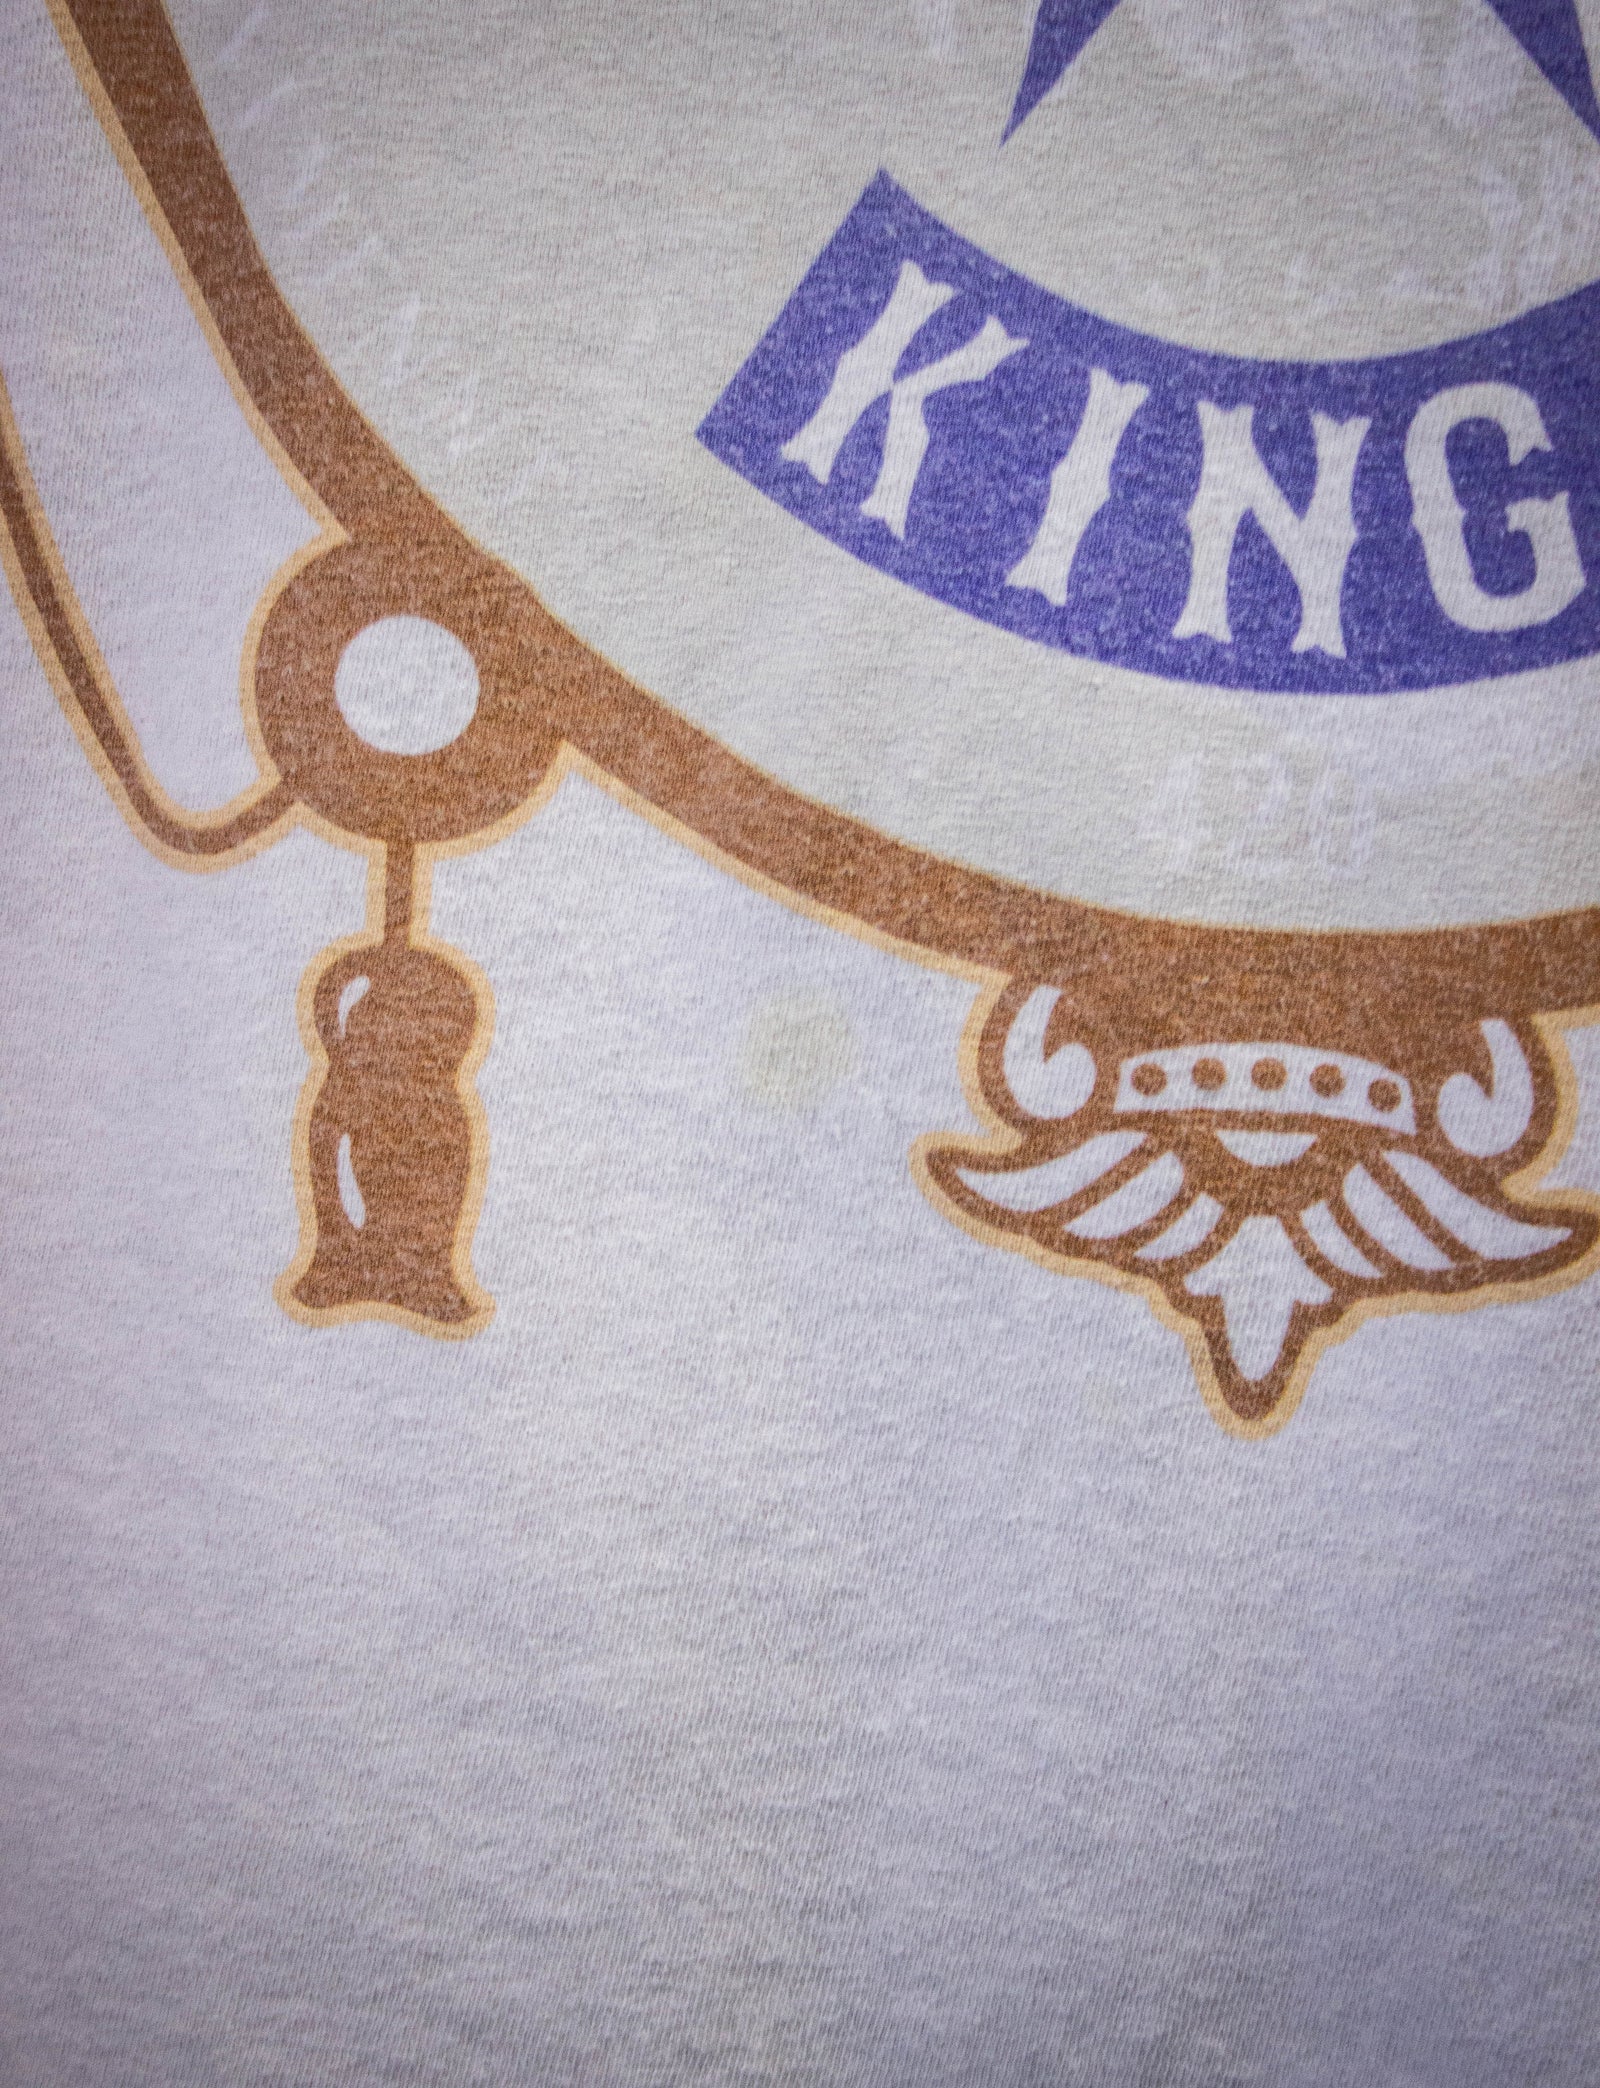 Vintage Kotton Mouth Kings Rap T Shirt 2000s White 2XL